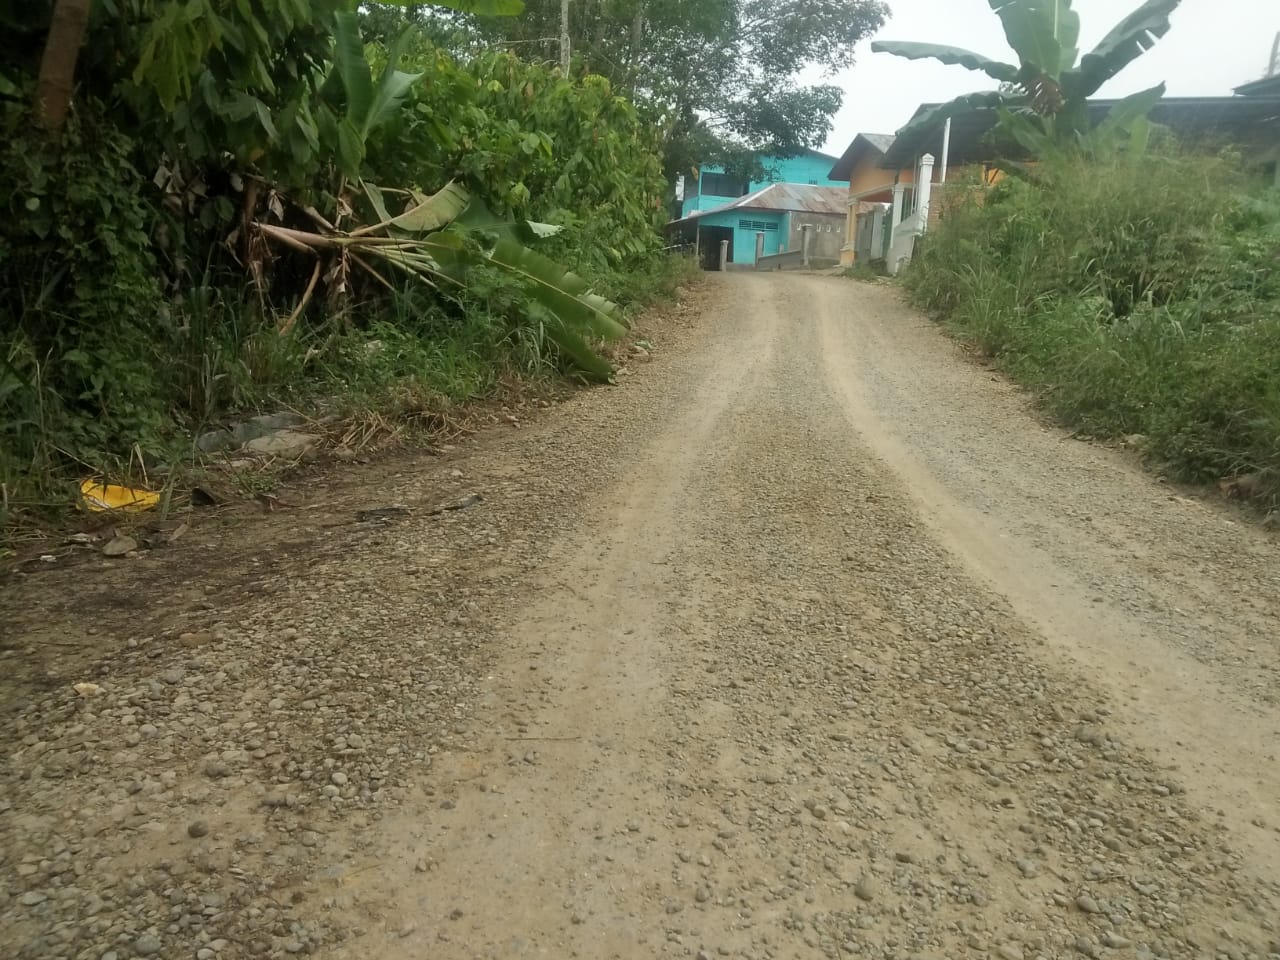 Material batu krikil dibadan jalan terlihat masih berserakan dan belum juga di aspal,Kamis (18/11). beritasore/Birong RT